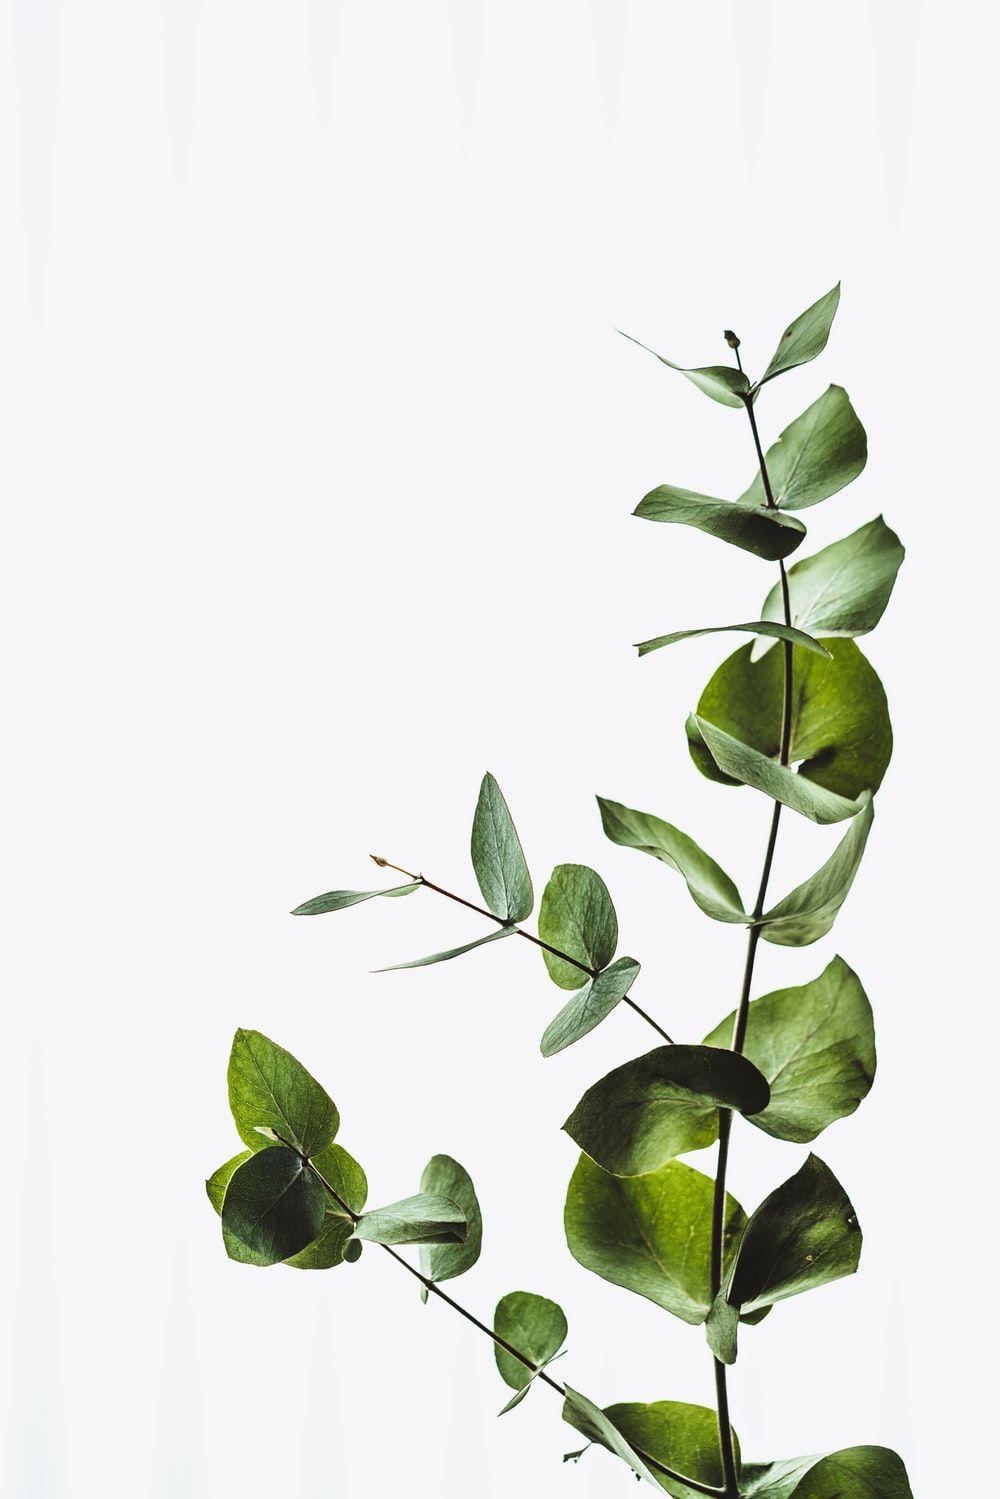 100 Plants Iphone Wallpapers  Wallpaperscom